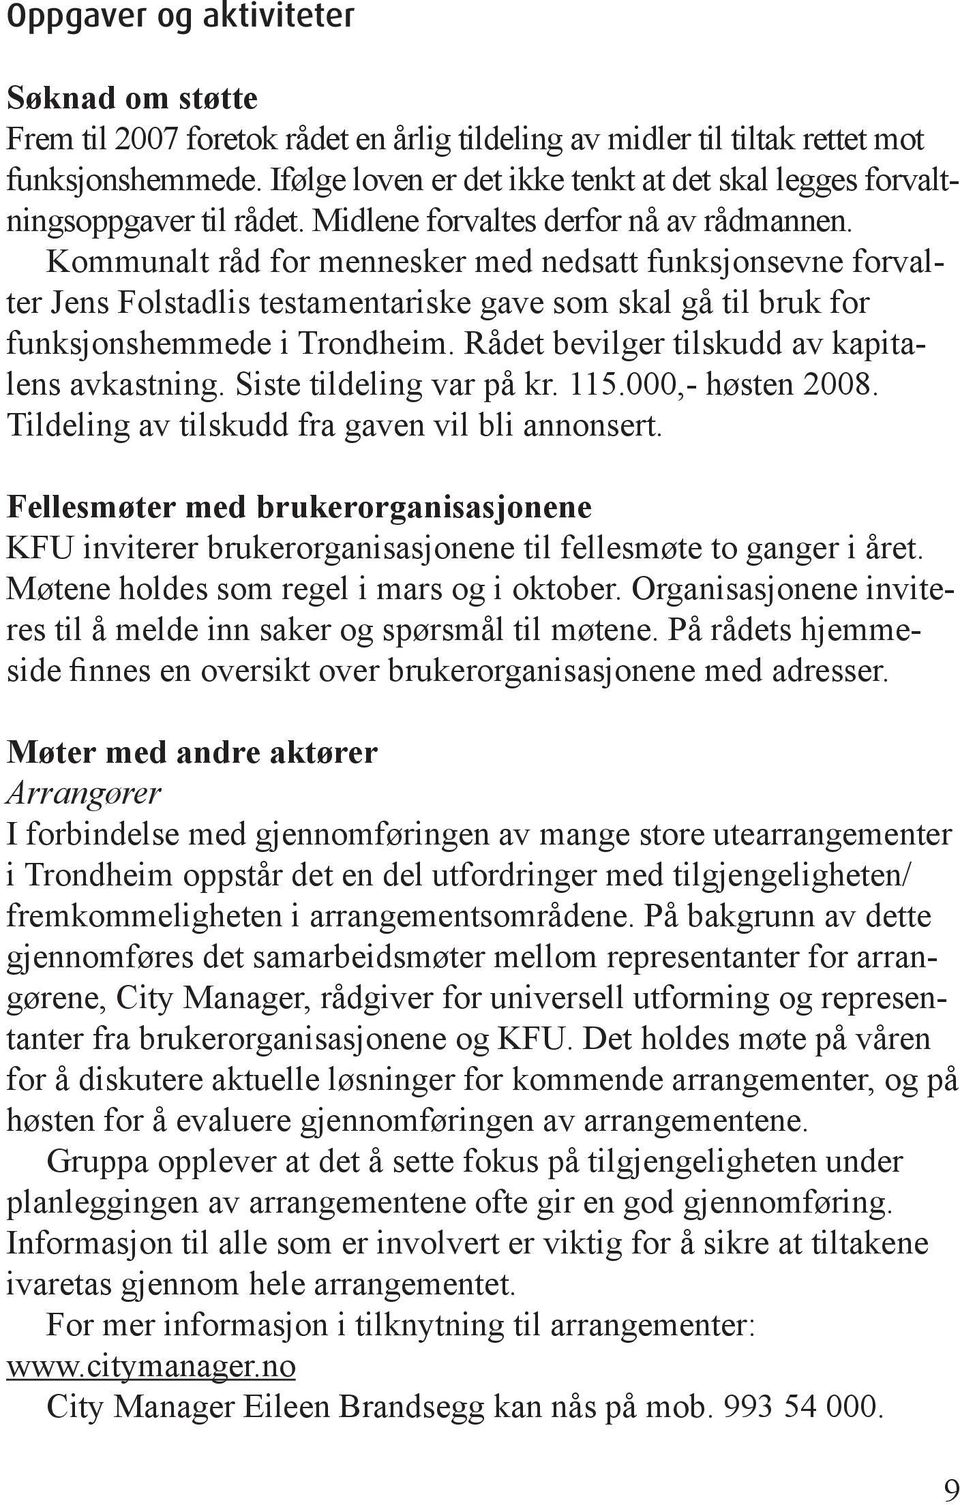 Kommunalt råd for mennesker med nedsatt funksjonsevne forvalter Jens Folstadlis testamentariske gave som skal gå til bruk for funksjonshemmede i Trondheim.